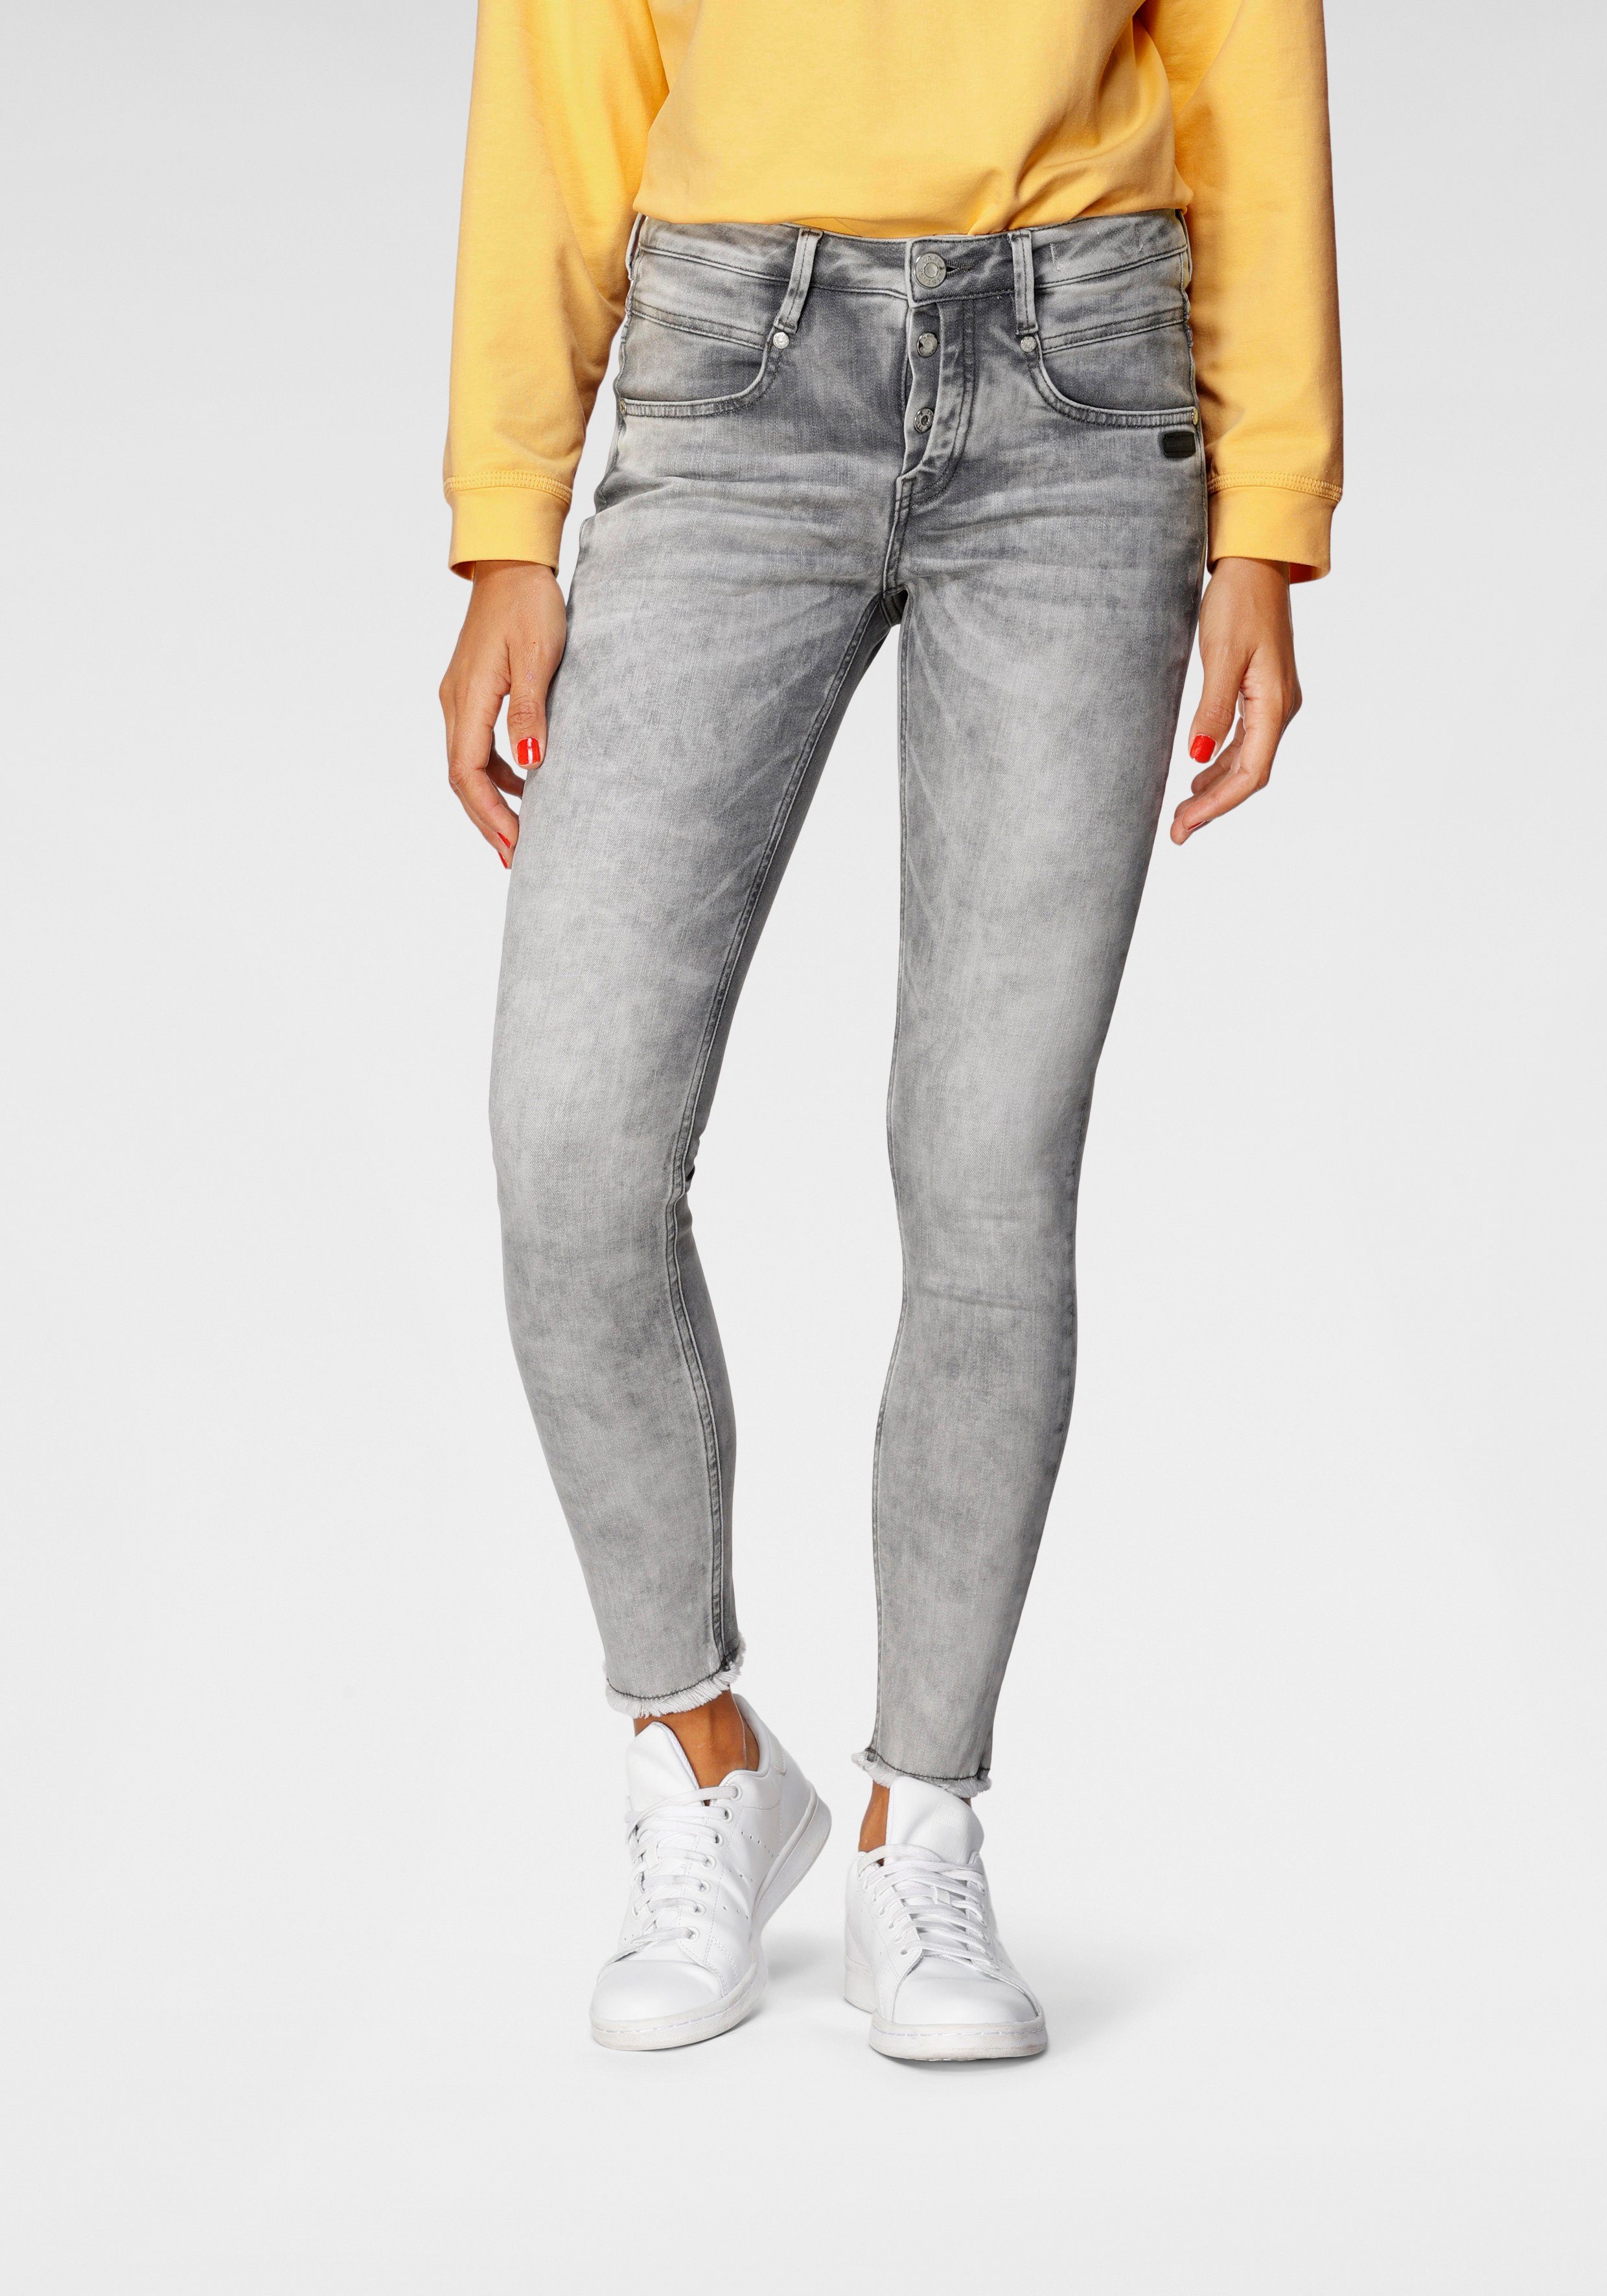 Ankle-Jeans für Damen kaufen » Knöchelfreie Jeans | OTTO